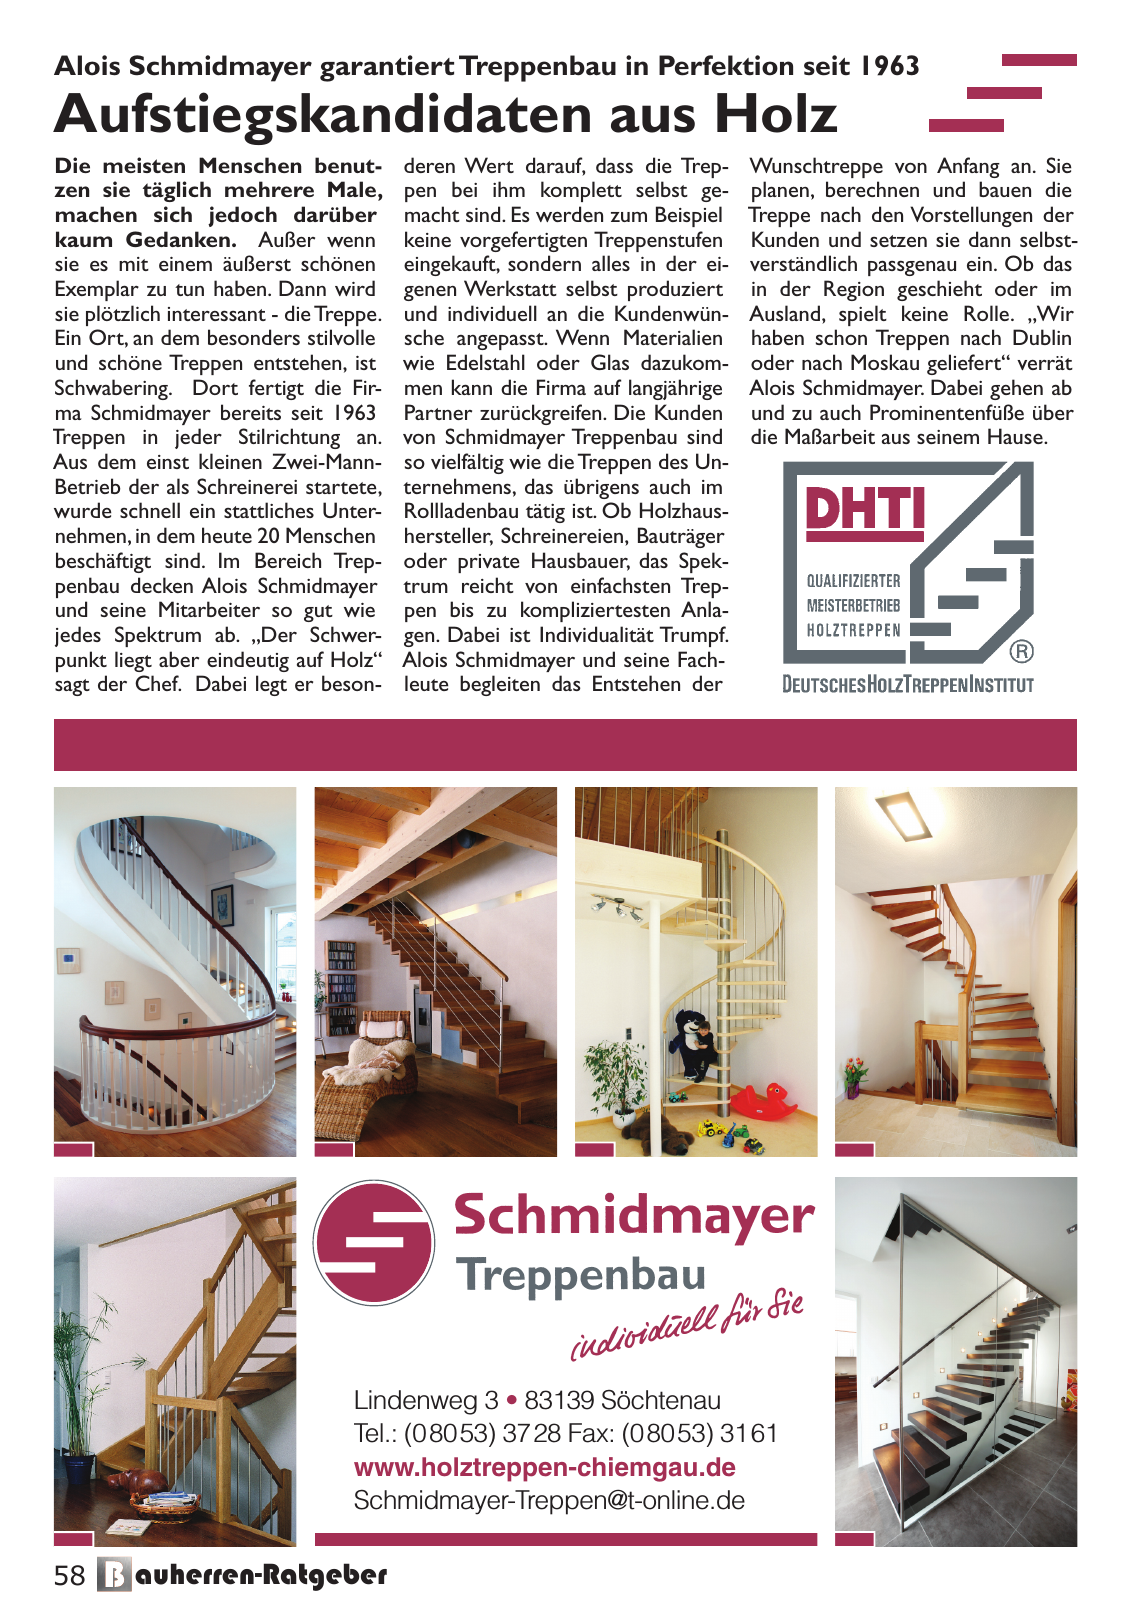 Vorschau Bauherren-Ratgeber 2015 2016 Seite 58